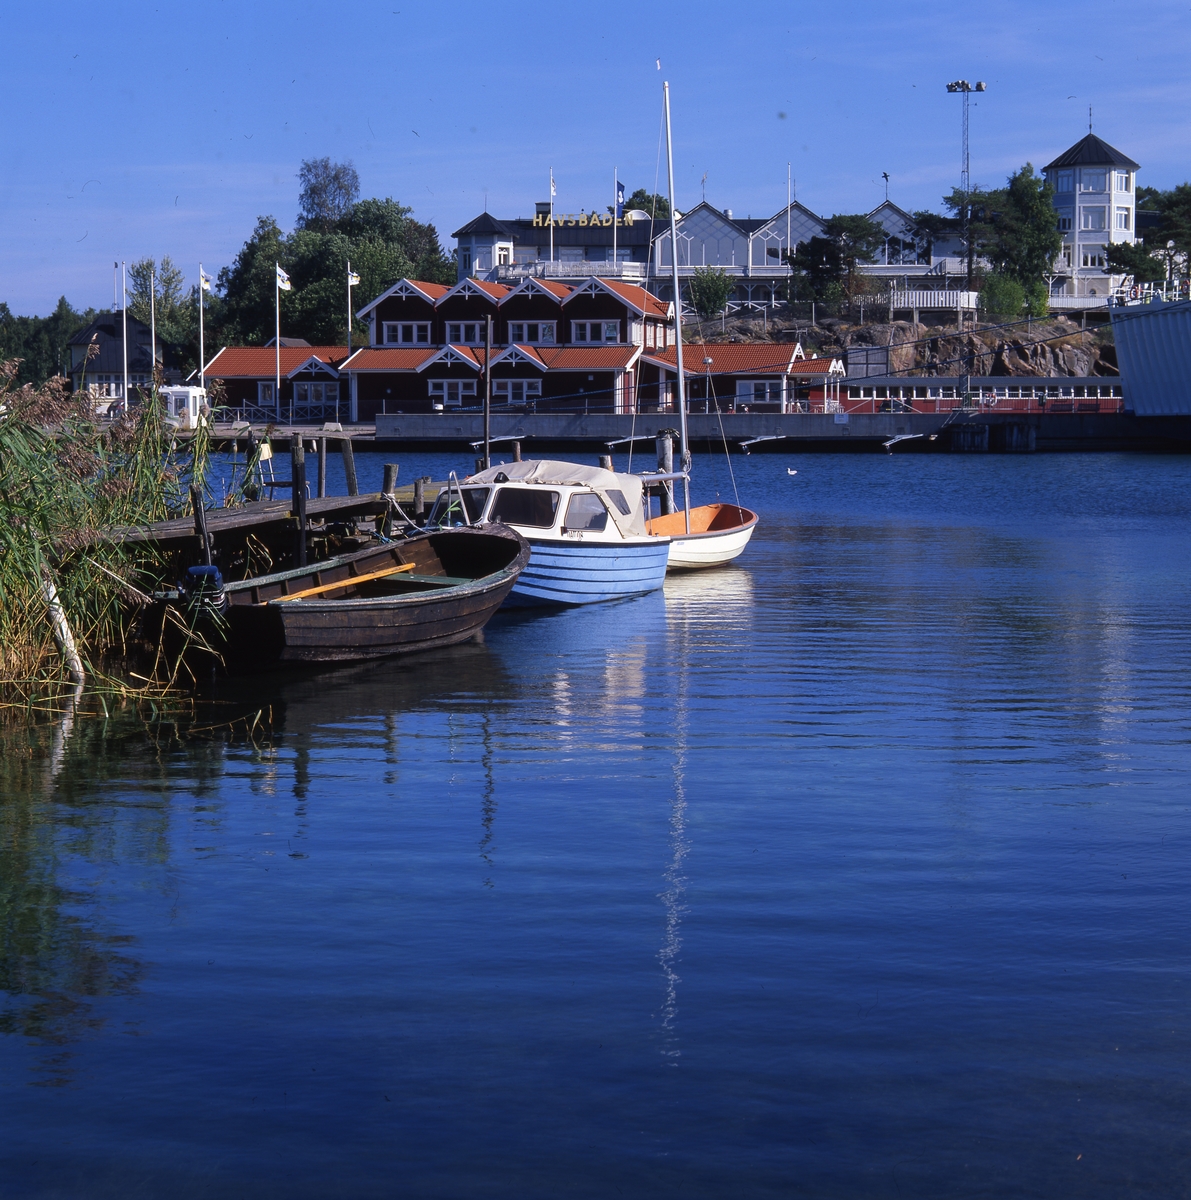 Fogdö, en ö i norra Roslagen, 2-3 september 1999.  Här ser vi Hotell Havsbaden, några båtar vid en brygga och flera byggnader vid vattnet.